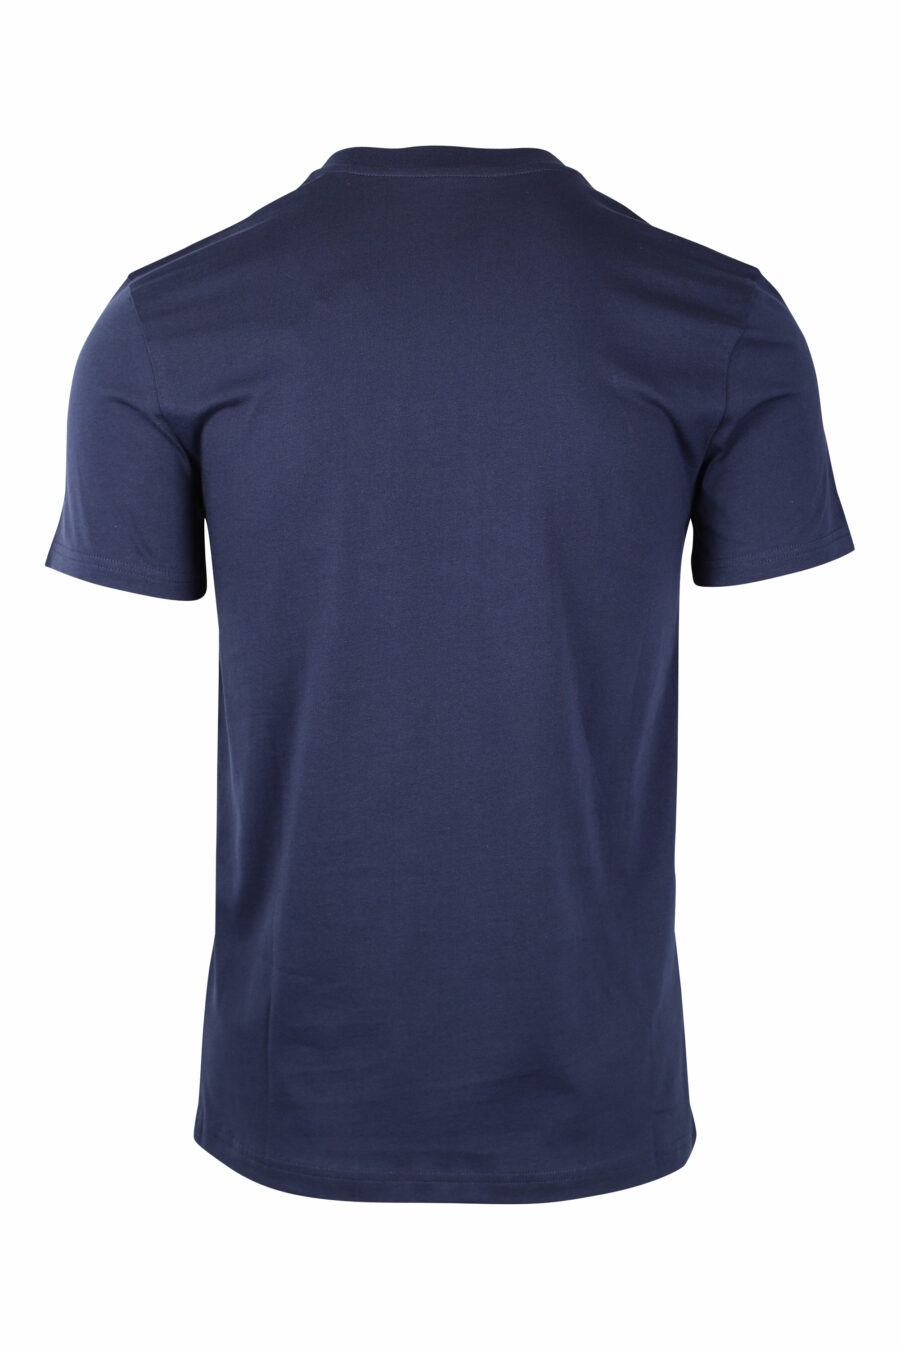 Dunkelblaues T-Shirt mit einfarbigem Doppelfrage-Maxilogo - IMG 1454